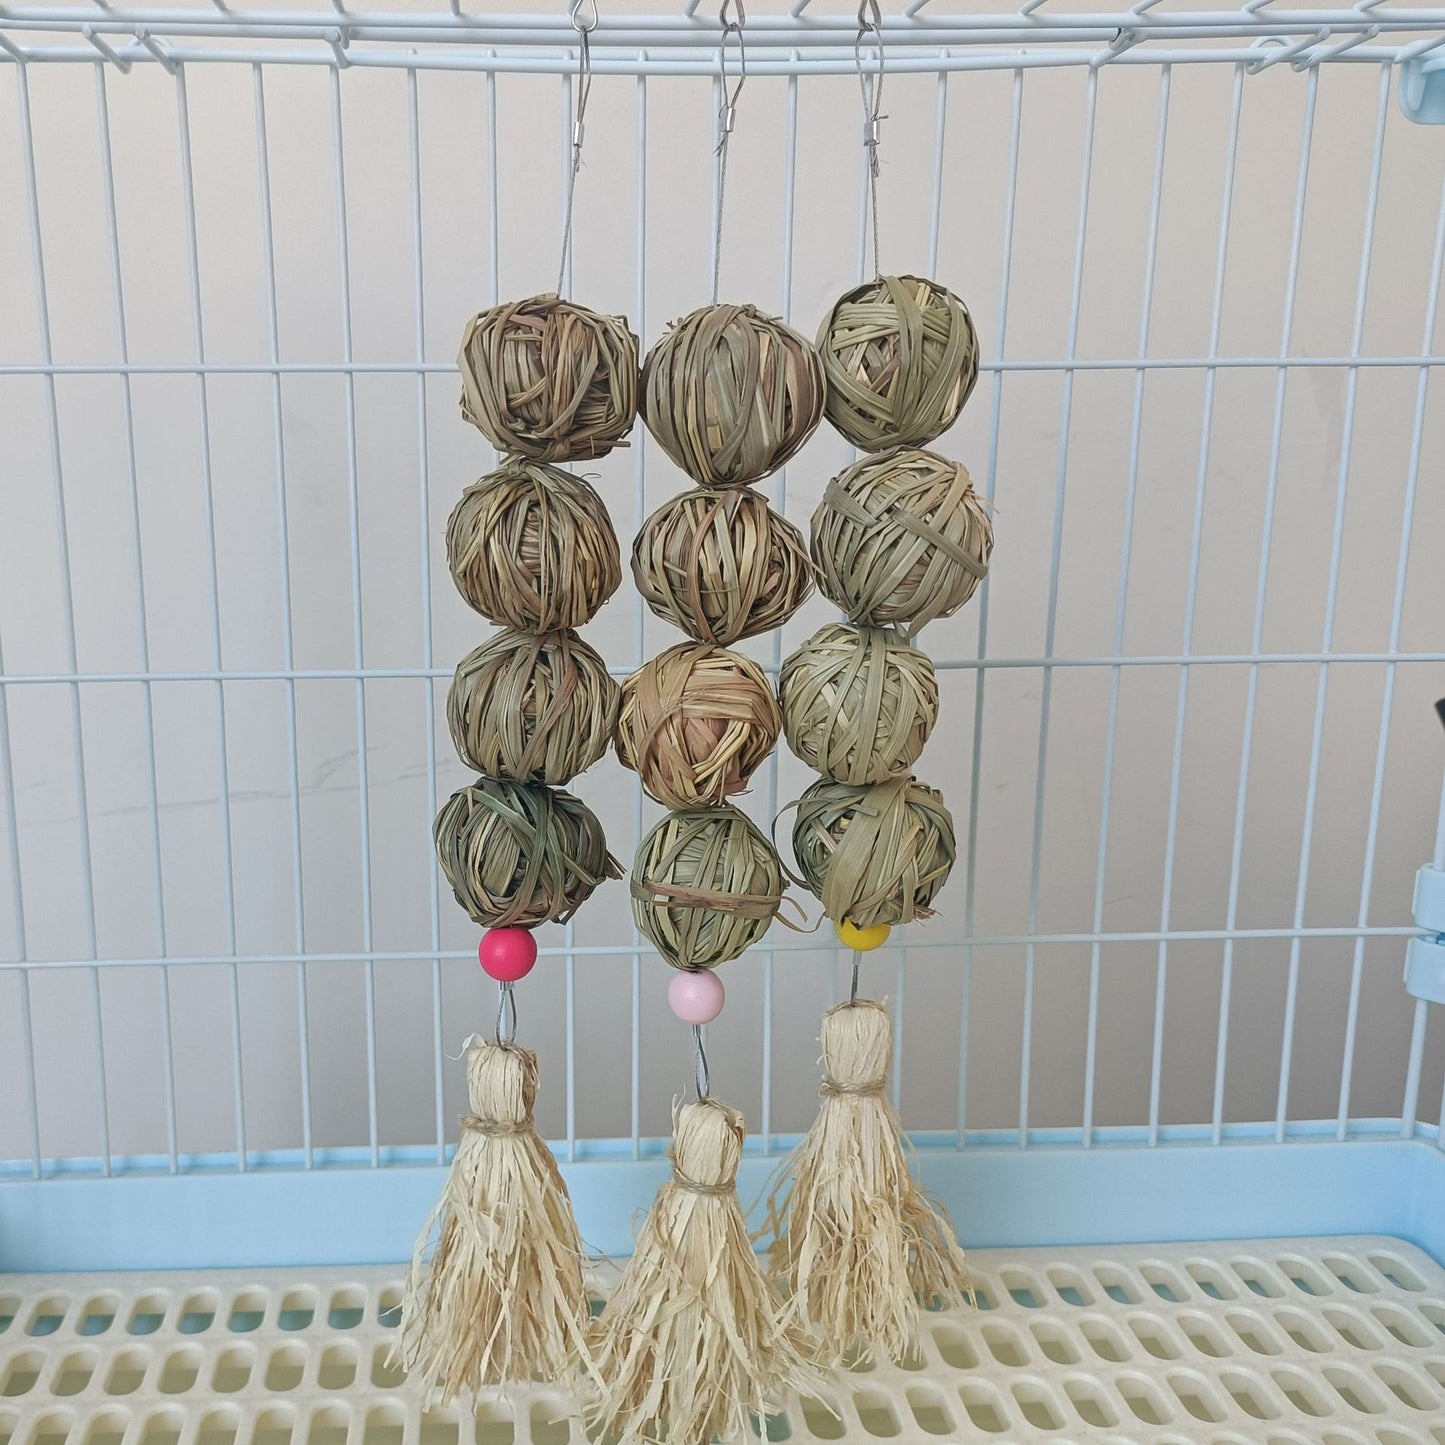 Pet Lapin Toy Natural Straw Ball Hanging String